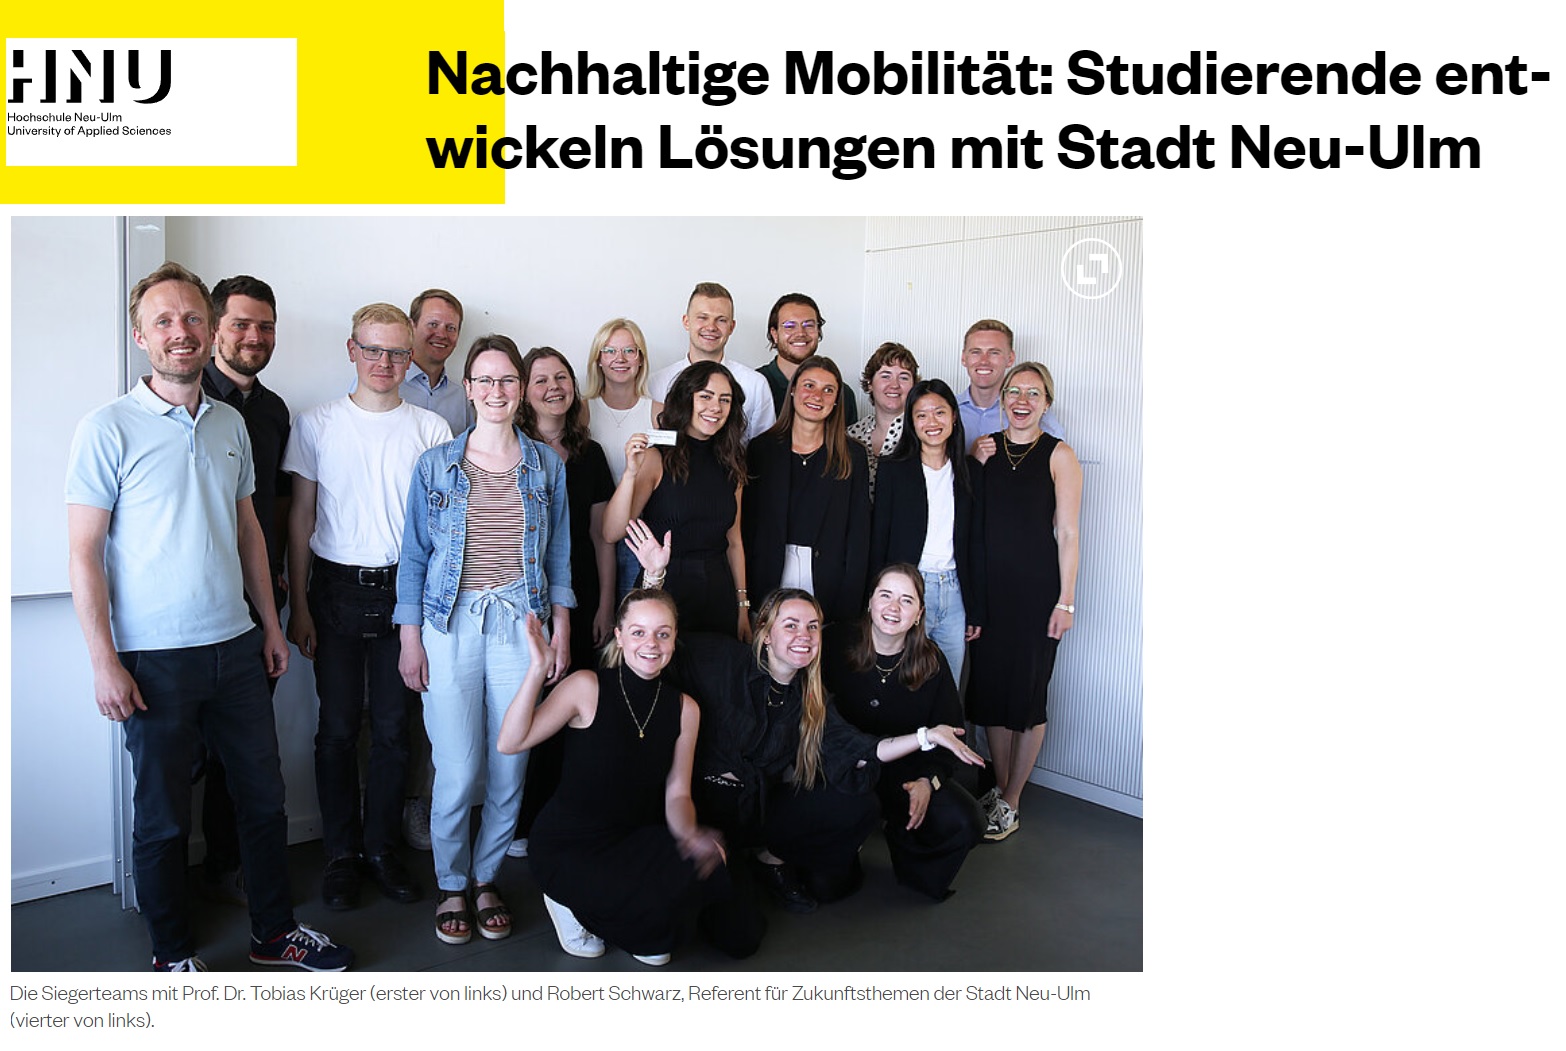 Nachhaltige Mobilität: Studierende entwickeln Lösungen mit der Stadt Neu-Ulm